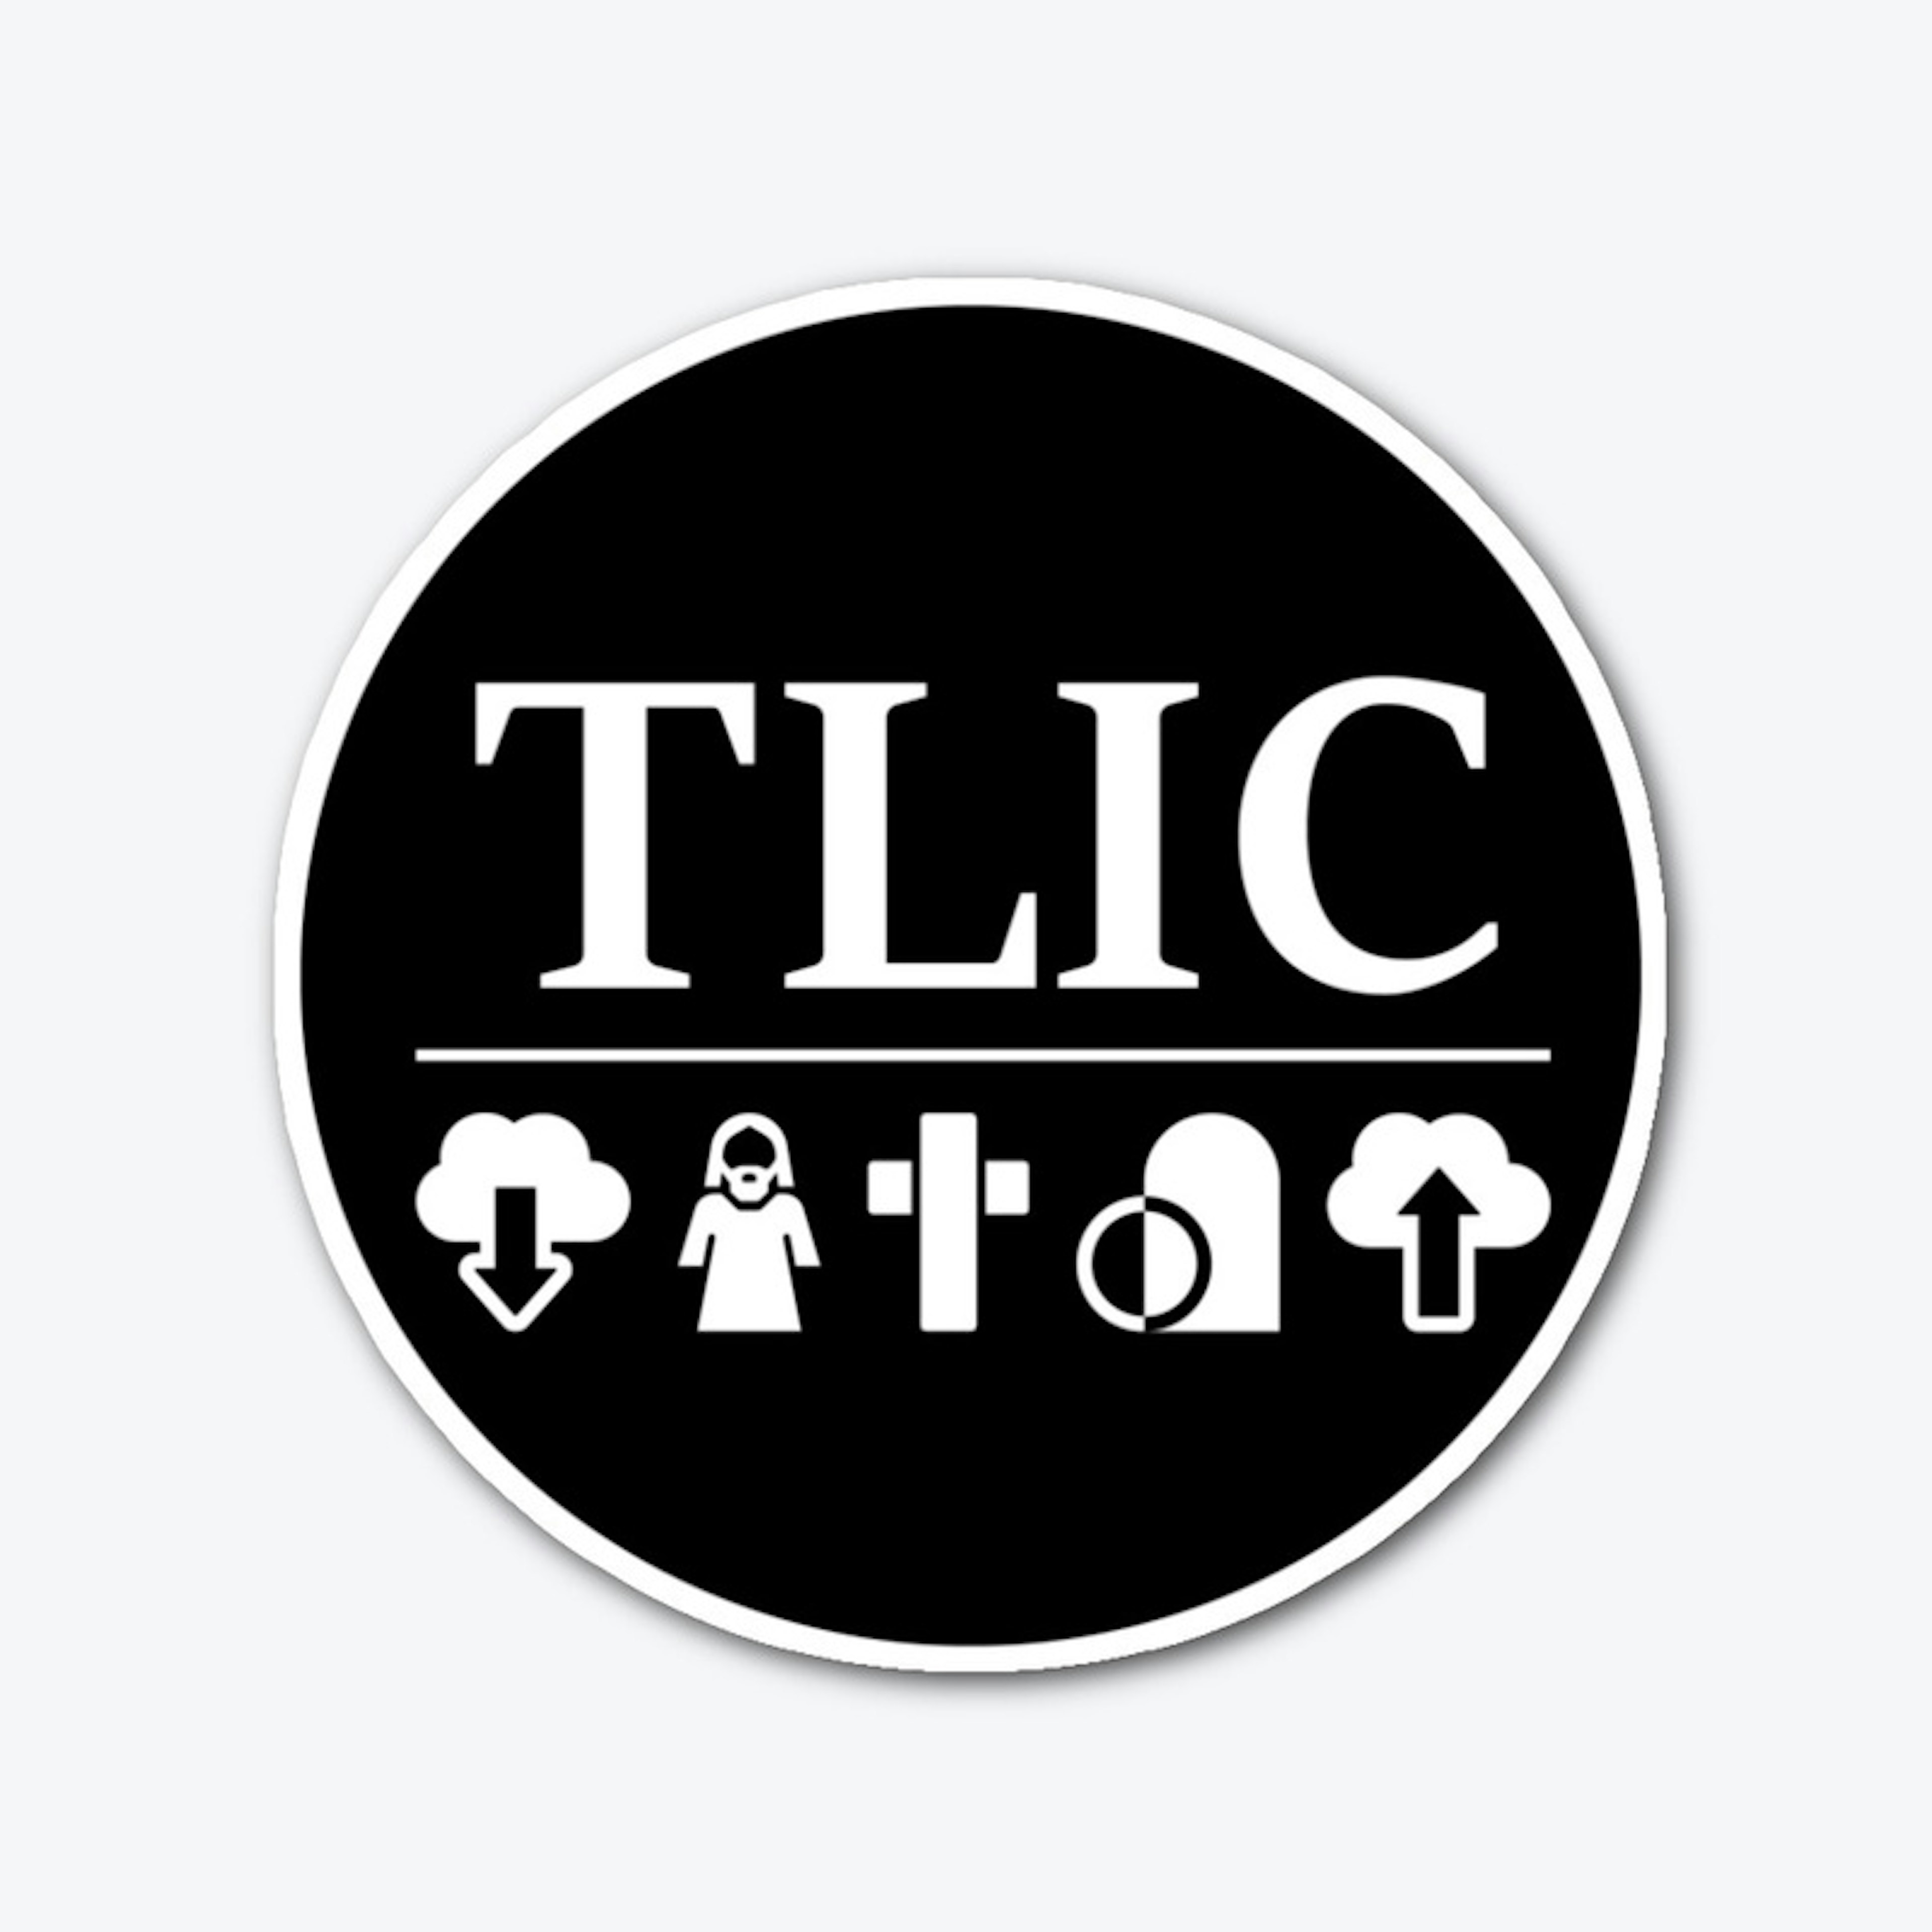 TLIC round sticker black